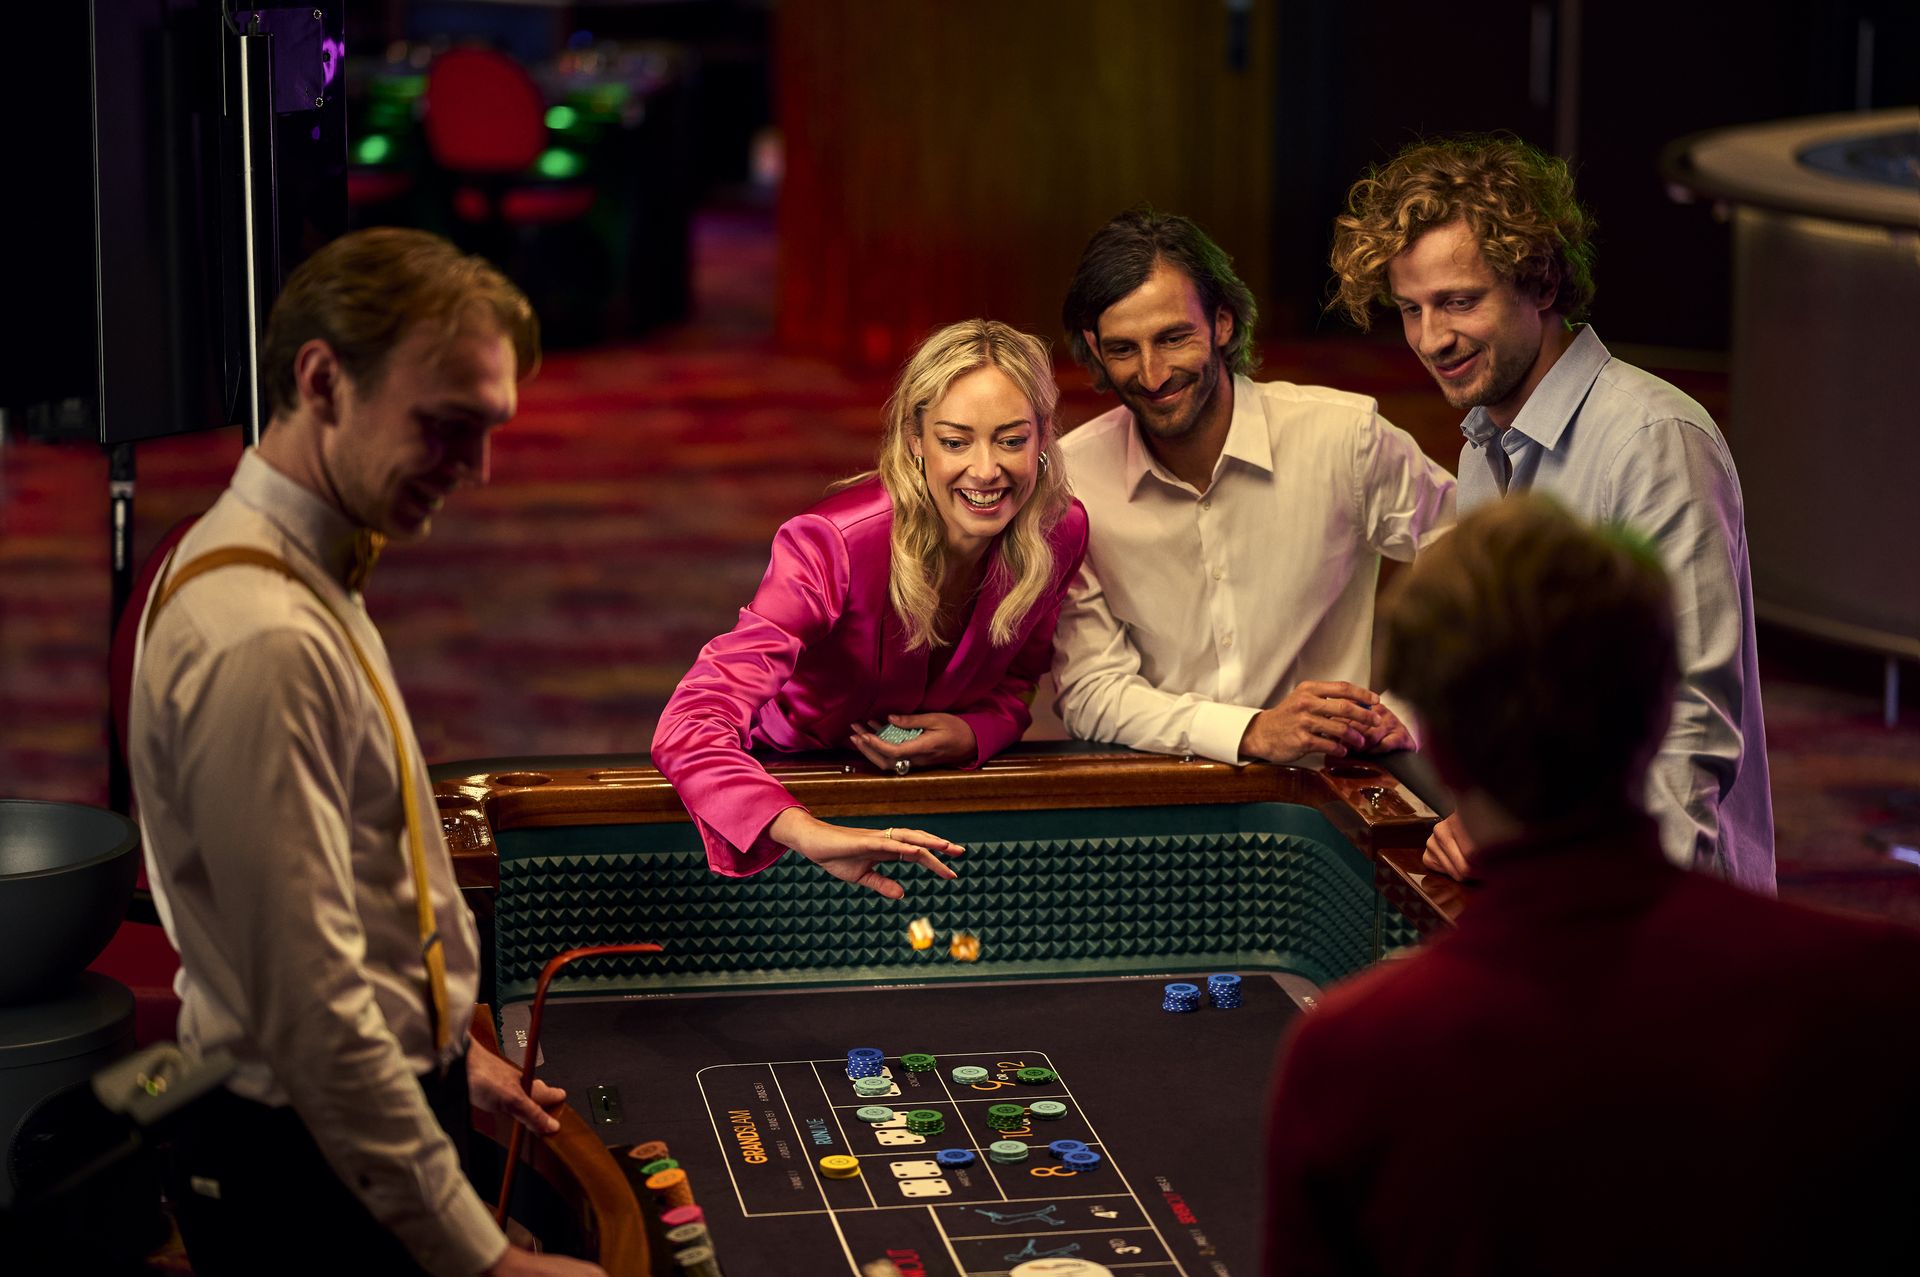 holland-casino-diceball-gasten-aan-speeltafel-met-croupier